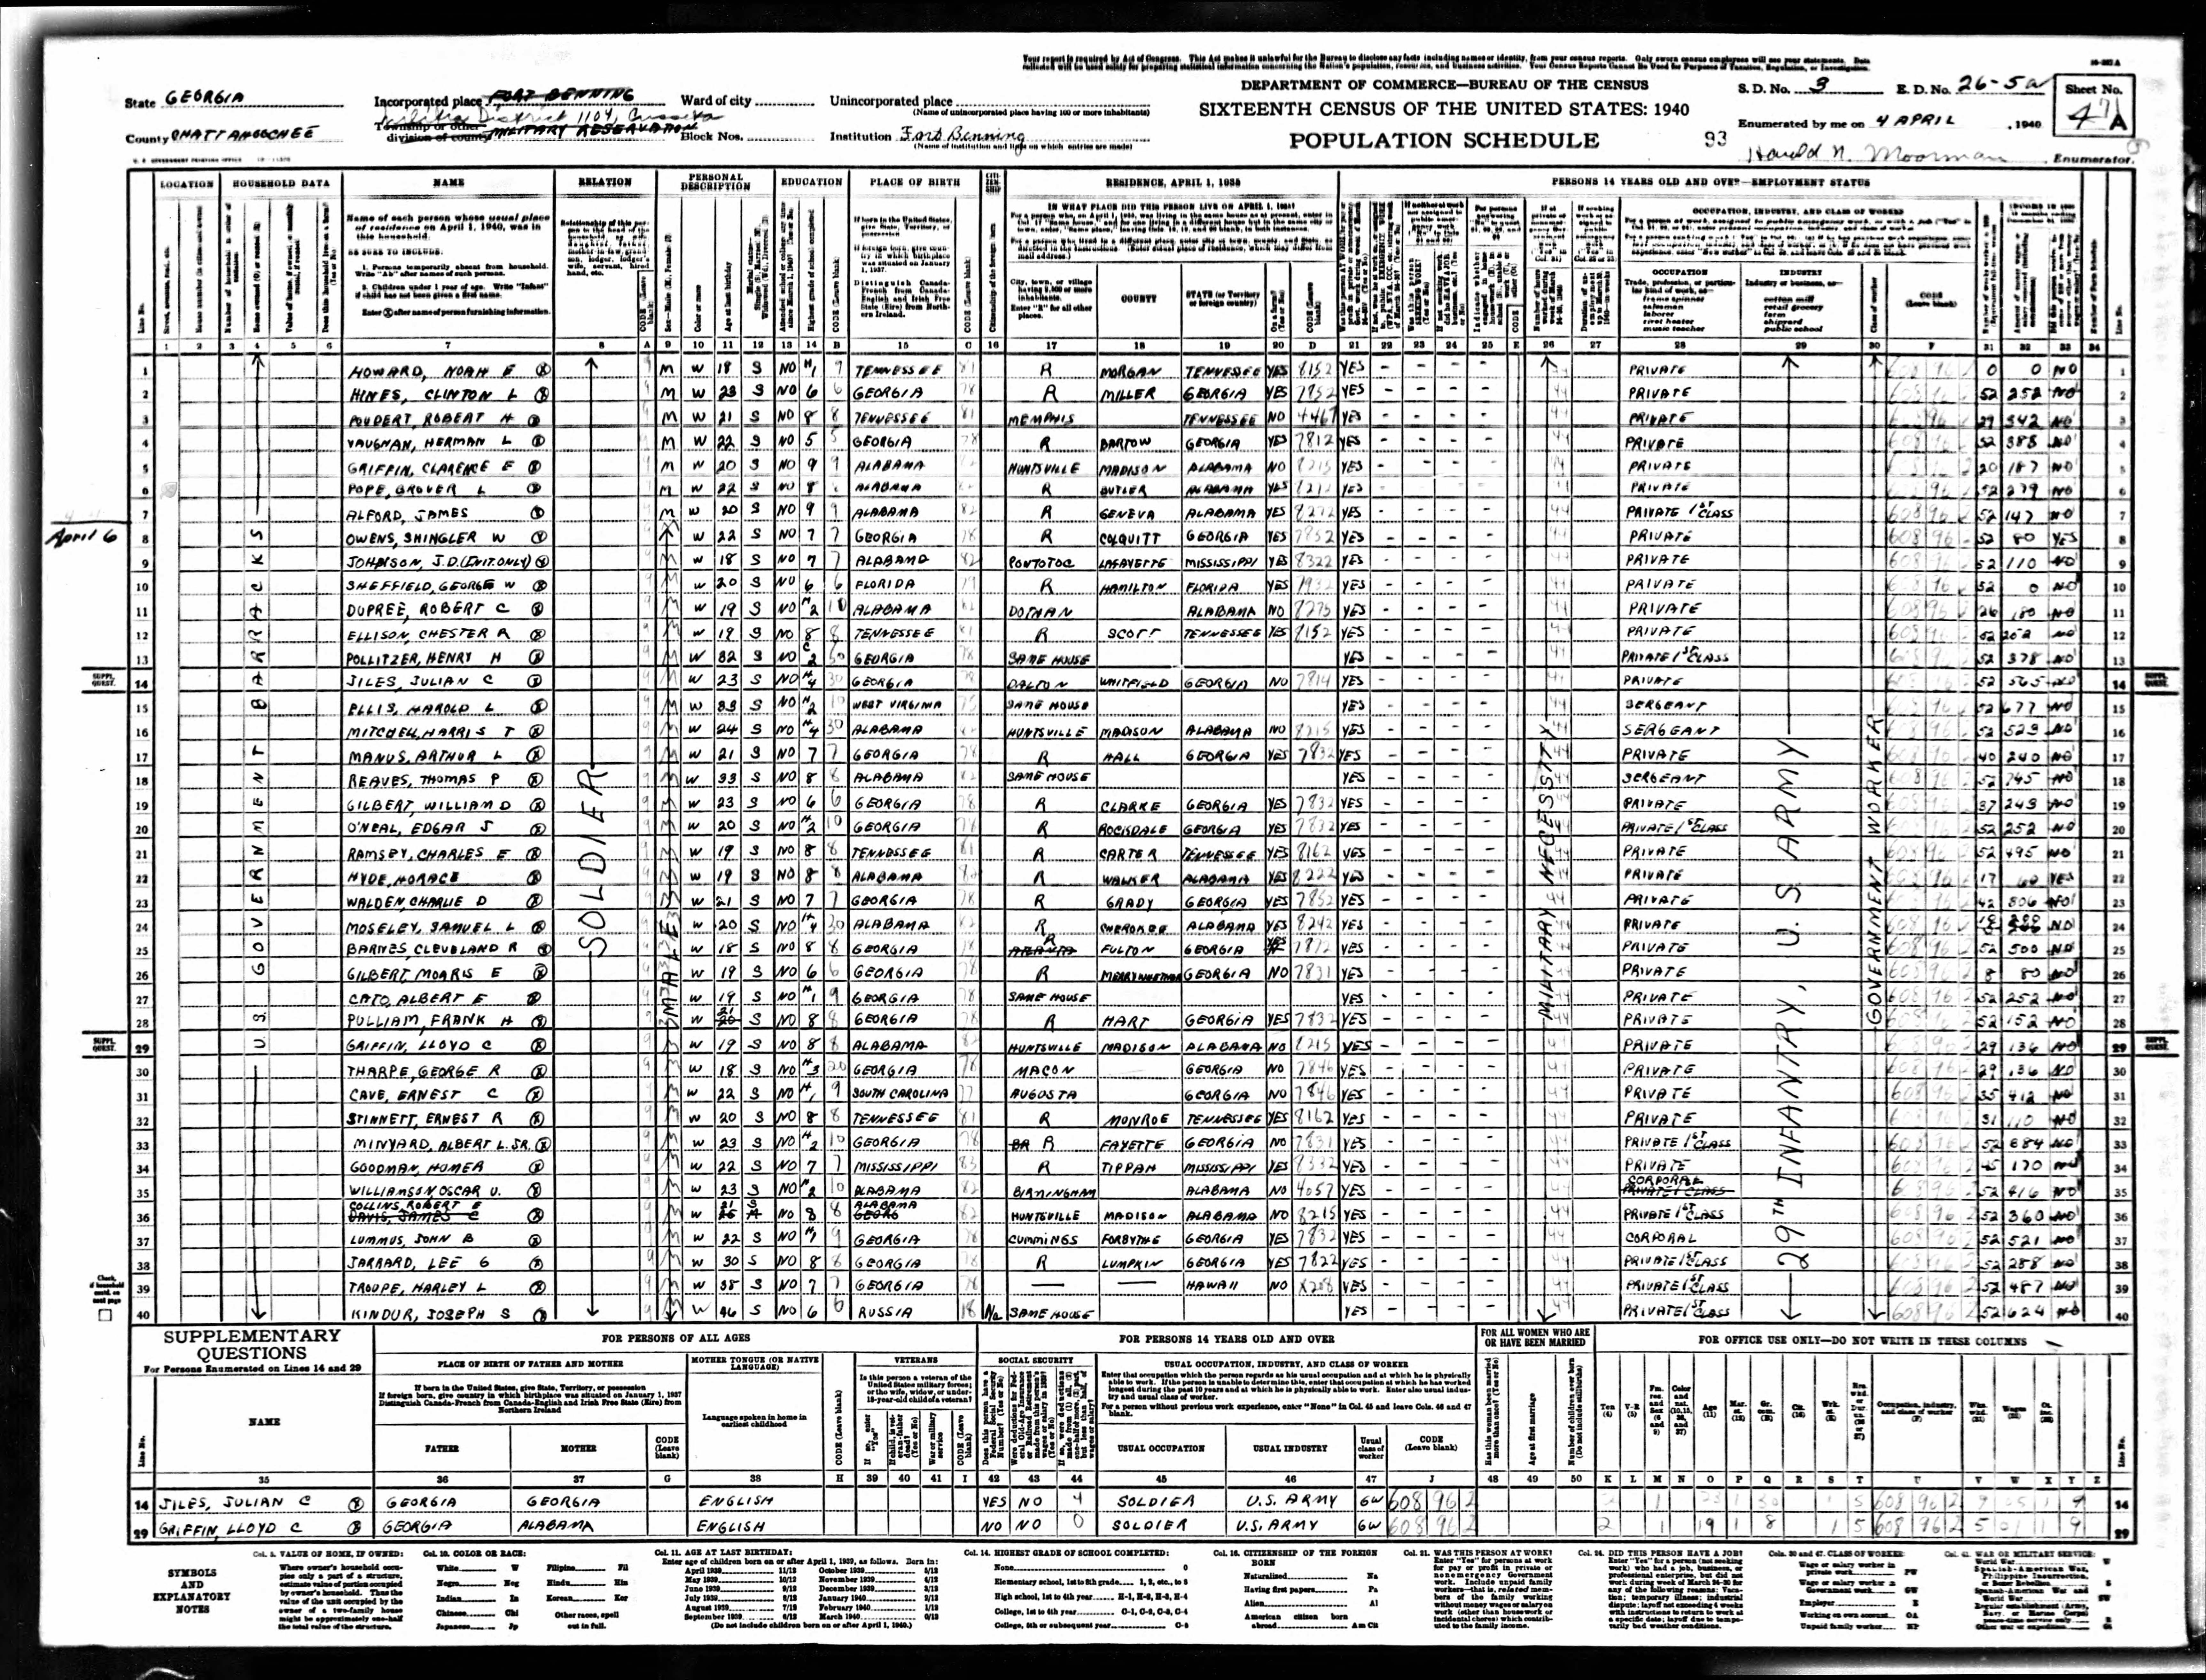 1940 US Census, Albert Minyard, line 33